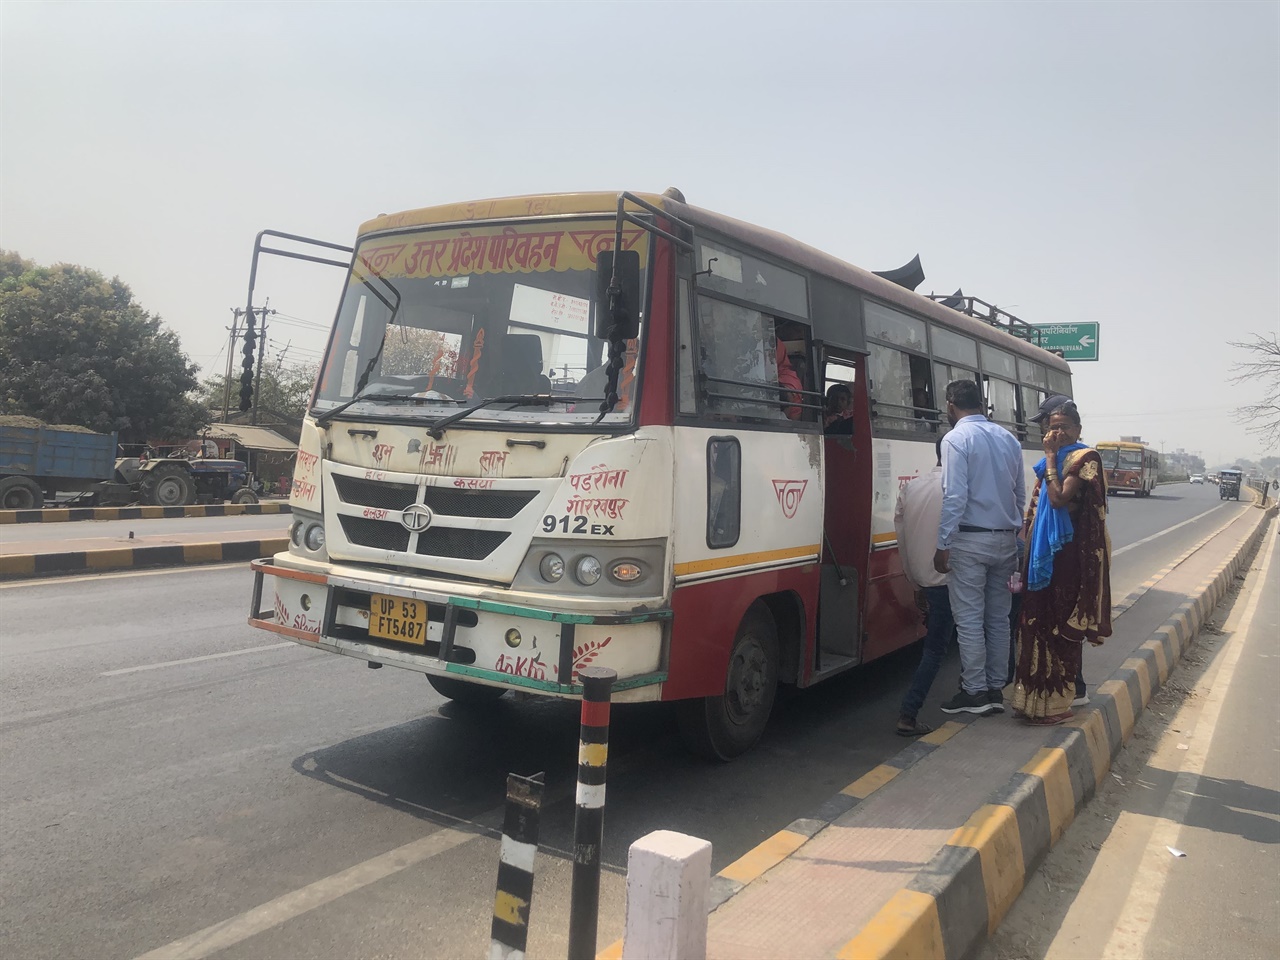 쿠쉬나가르로 향하는 버스